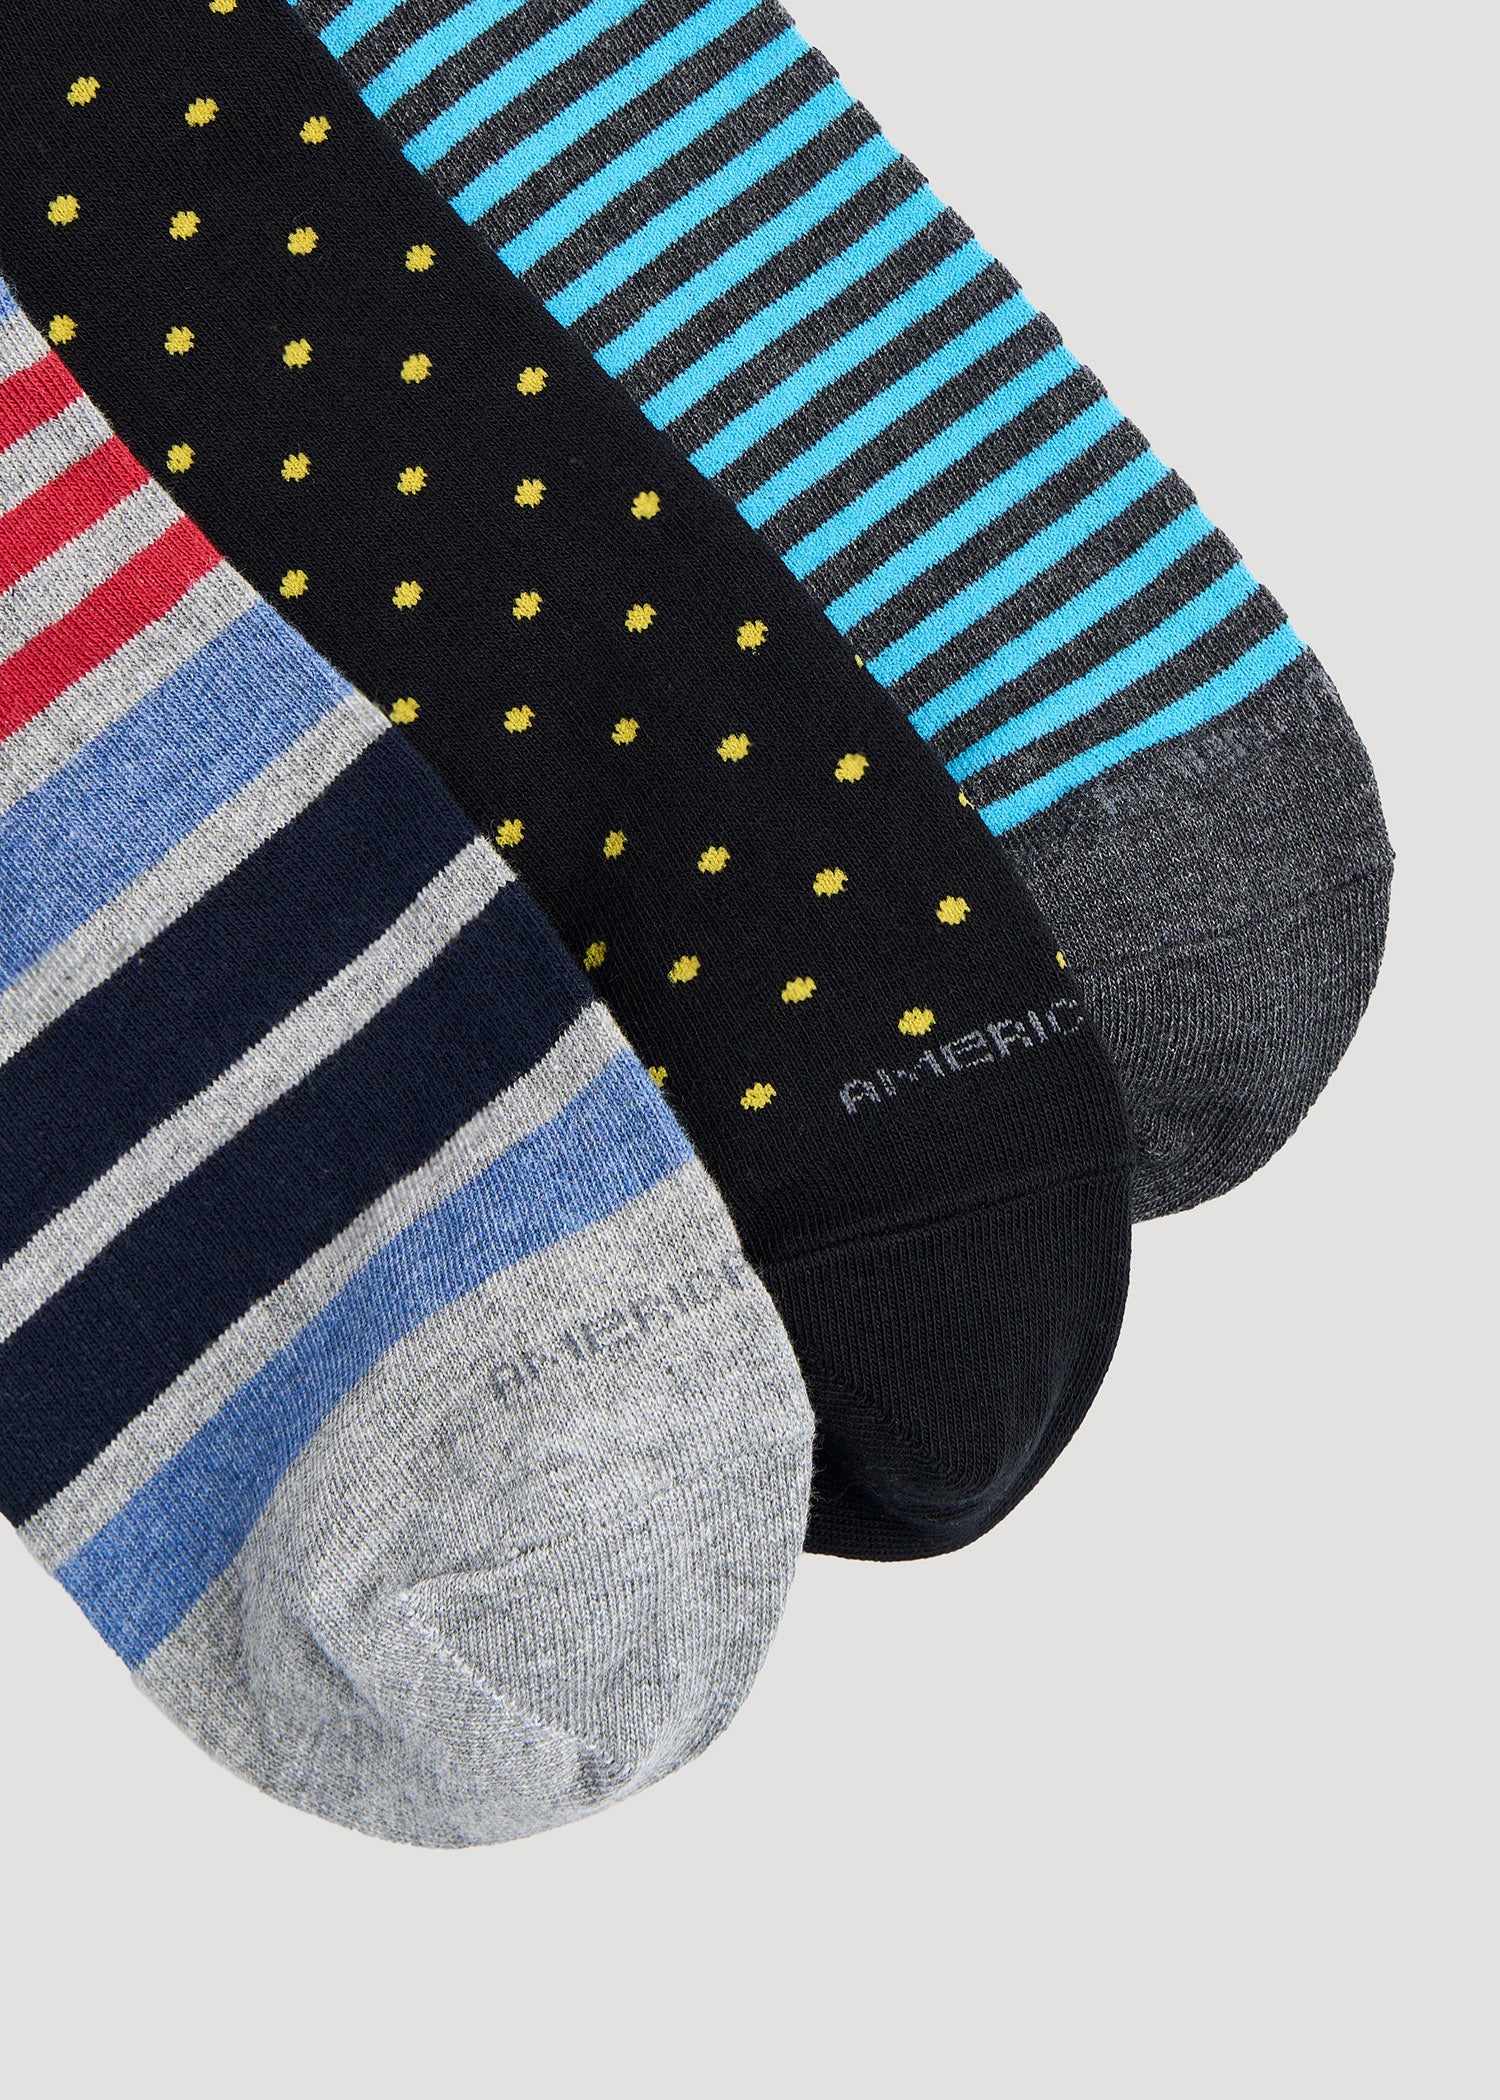 Dollar Full Length Socks For Men